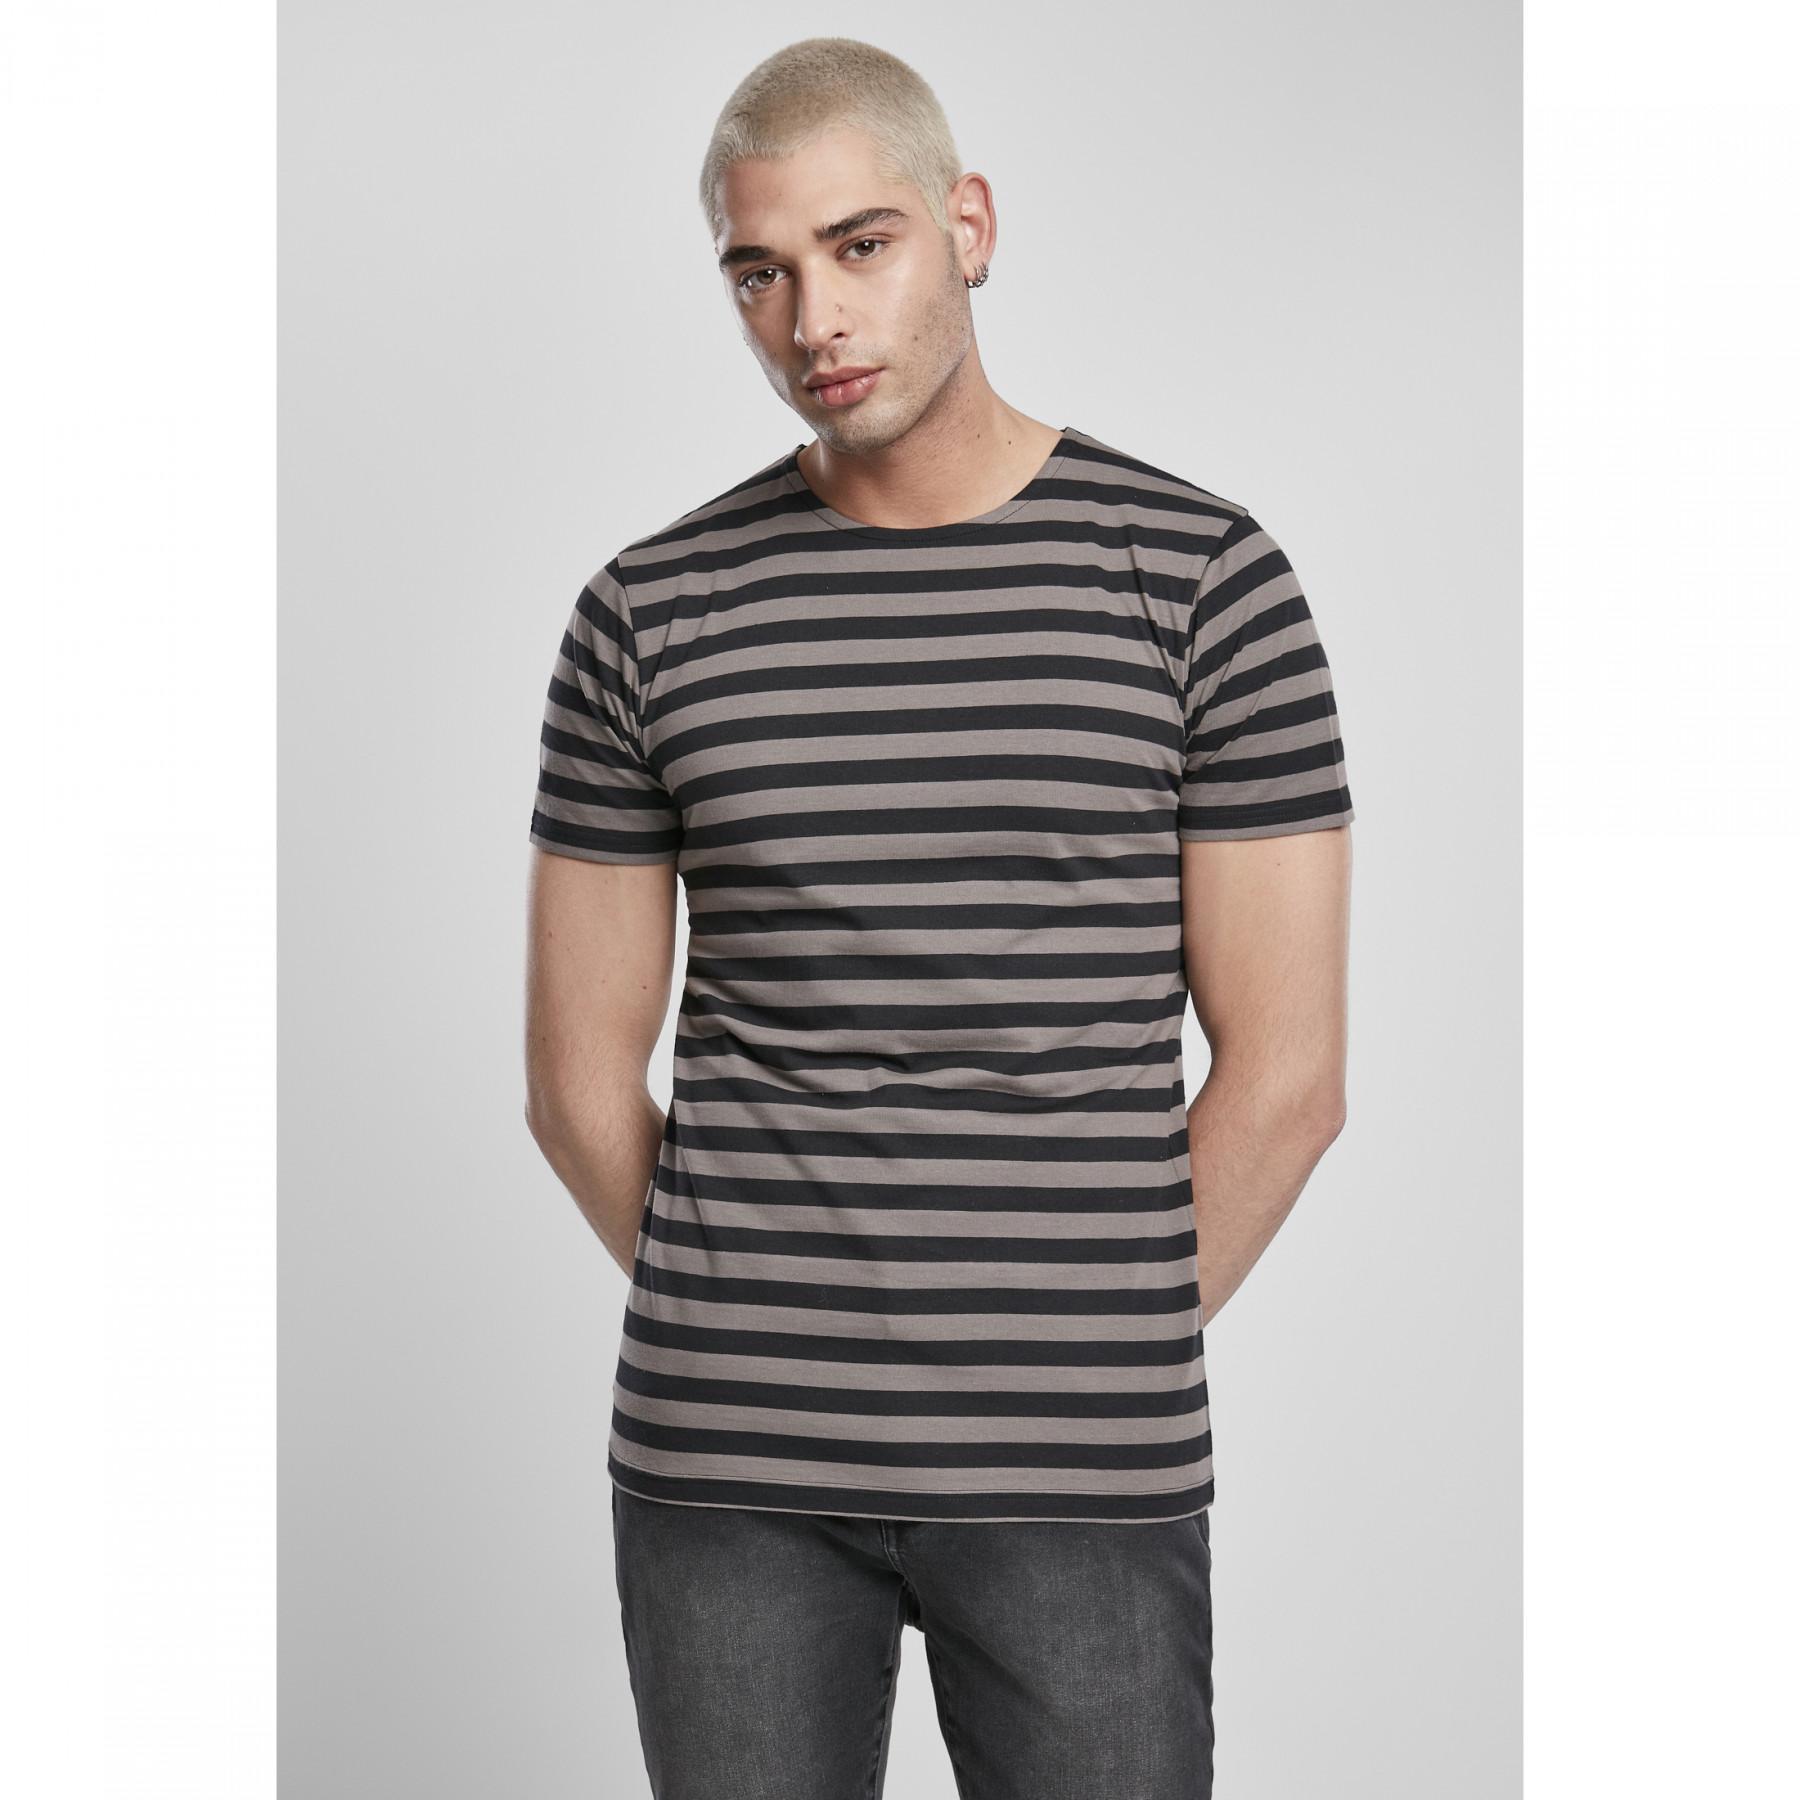 Camiseta Urban Classics stripe